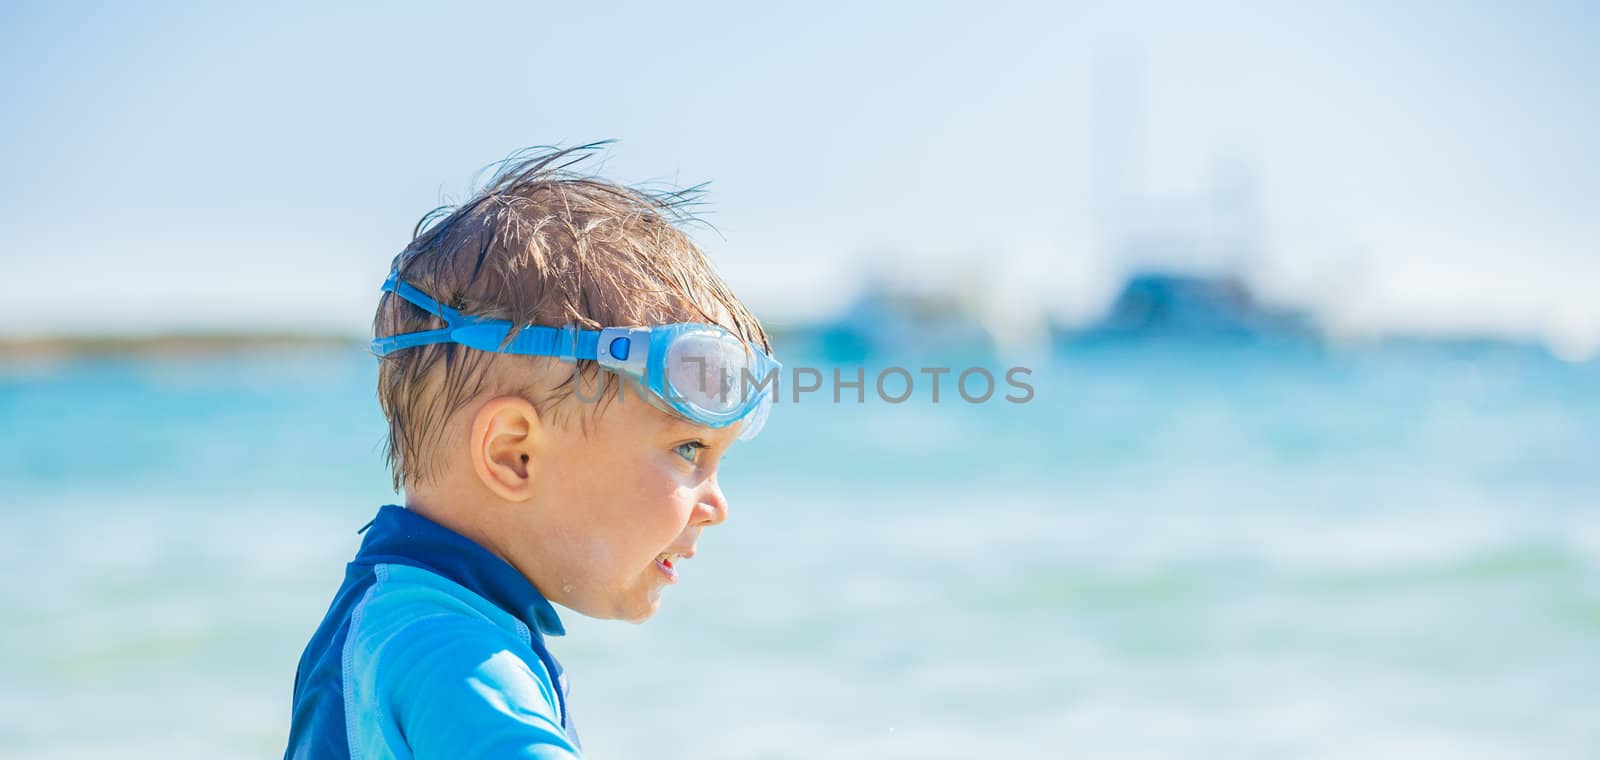 Cute boy on the beach by maxoliki